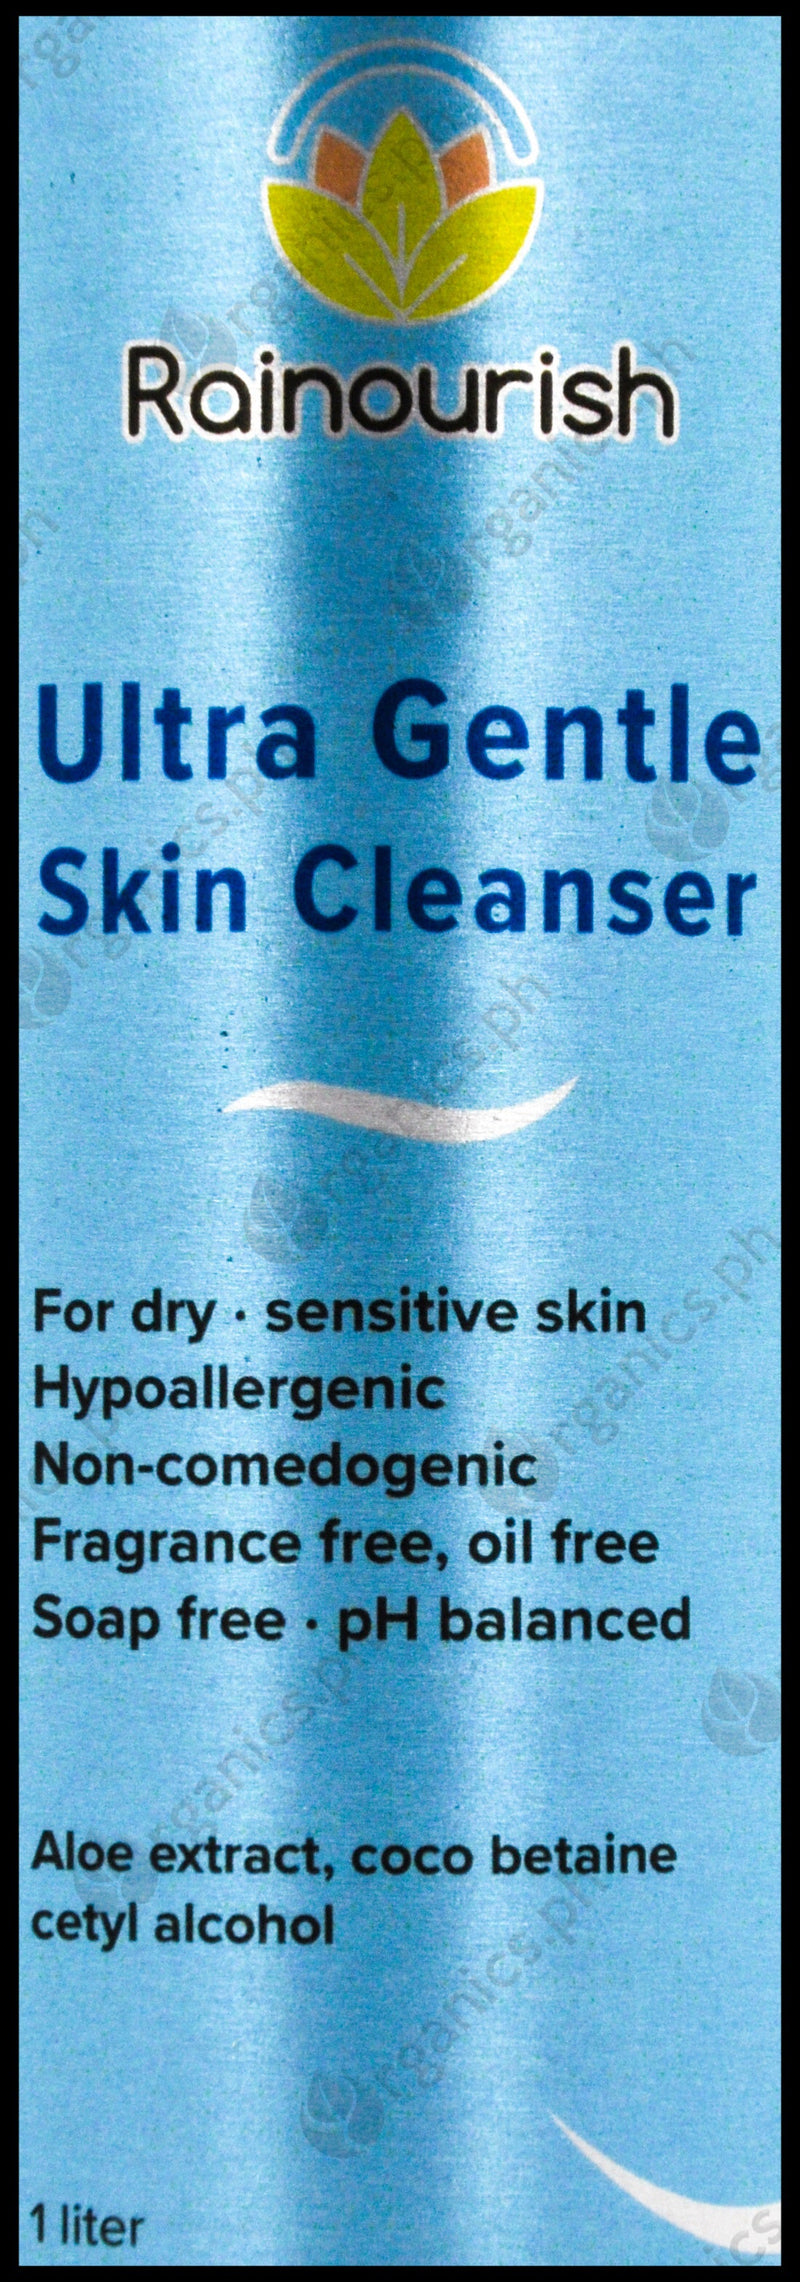 Rainourish Ultra Gentle Skin Cleanser (1 liter) - Organics.ph